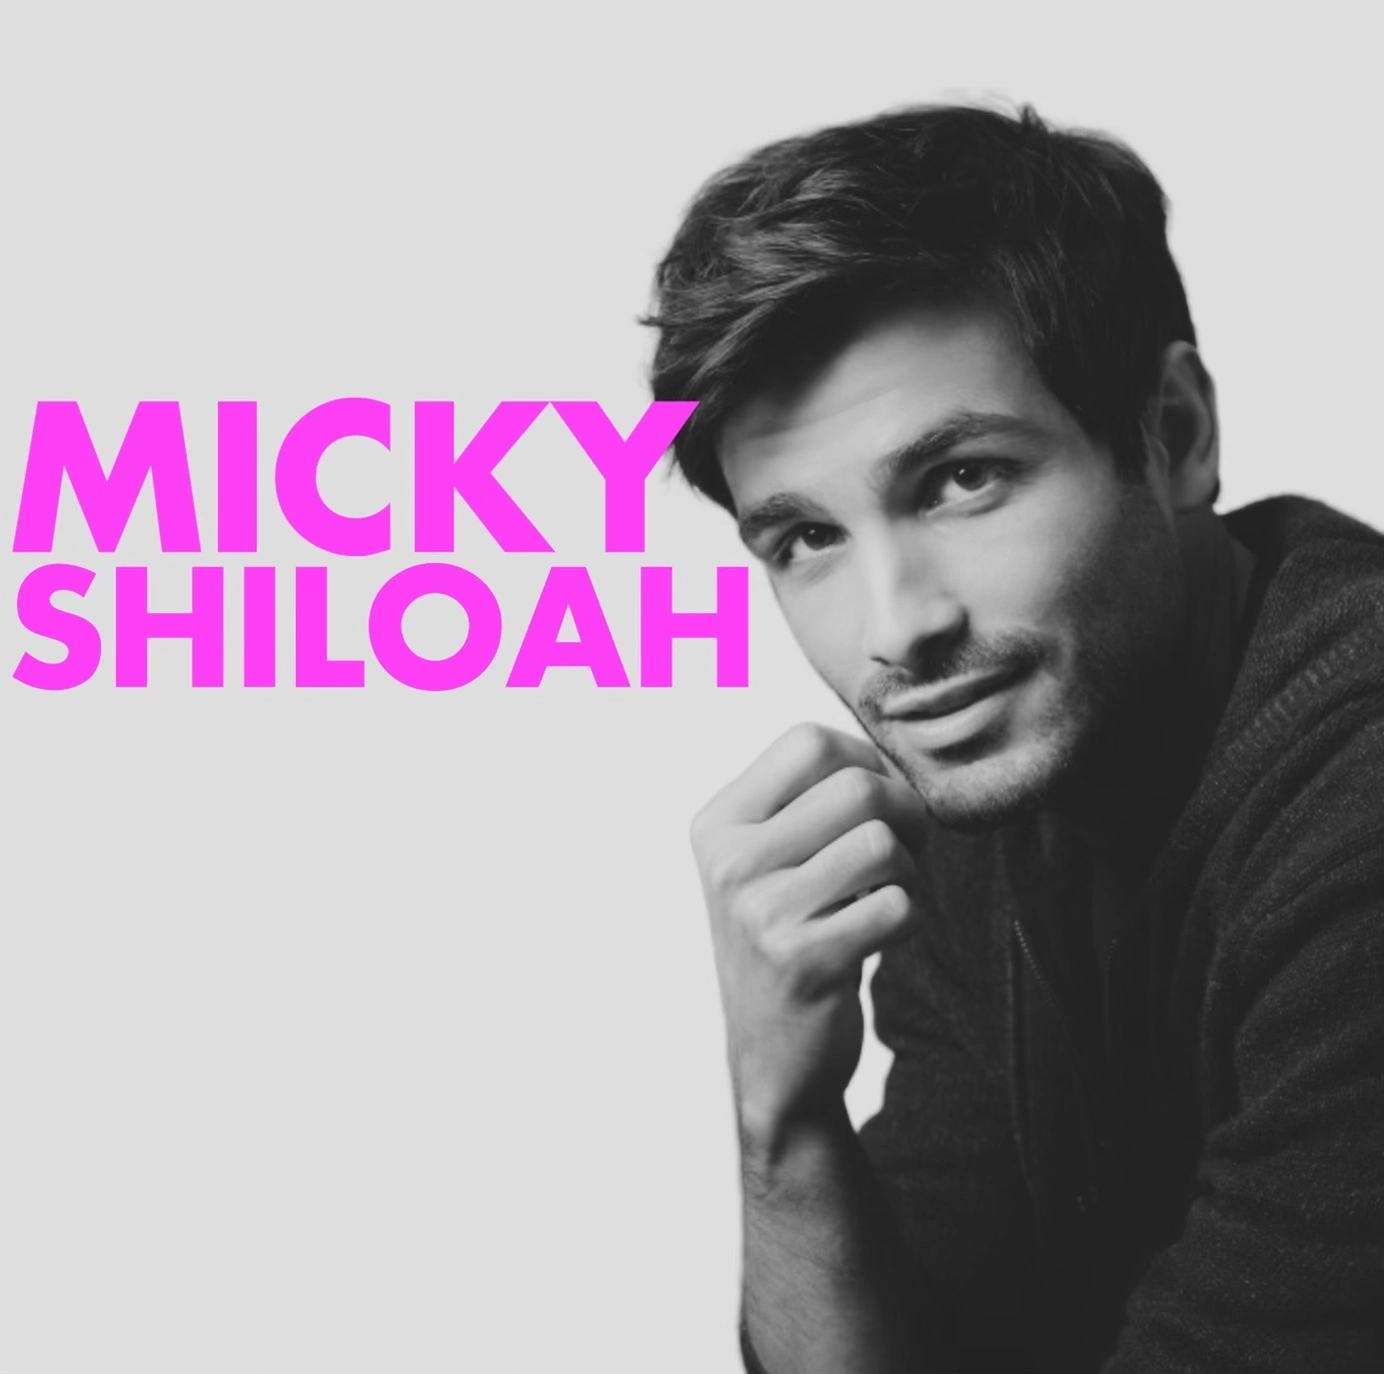 Micky Shiloah